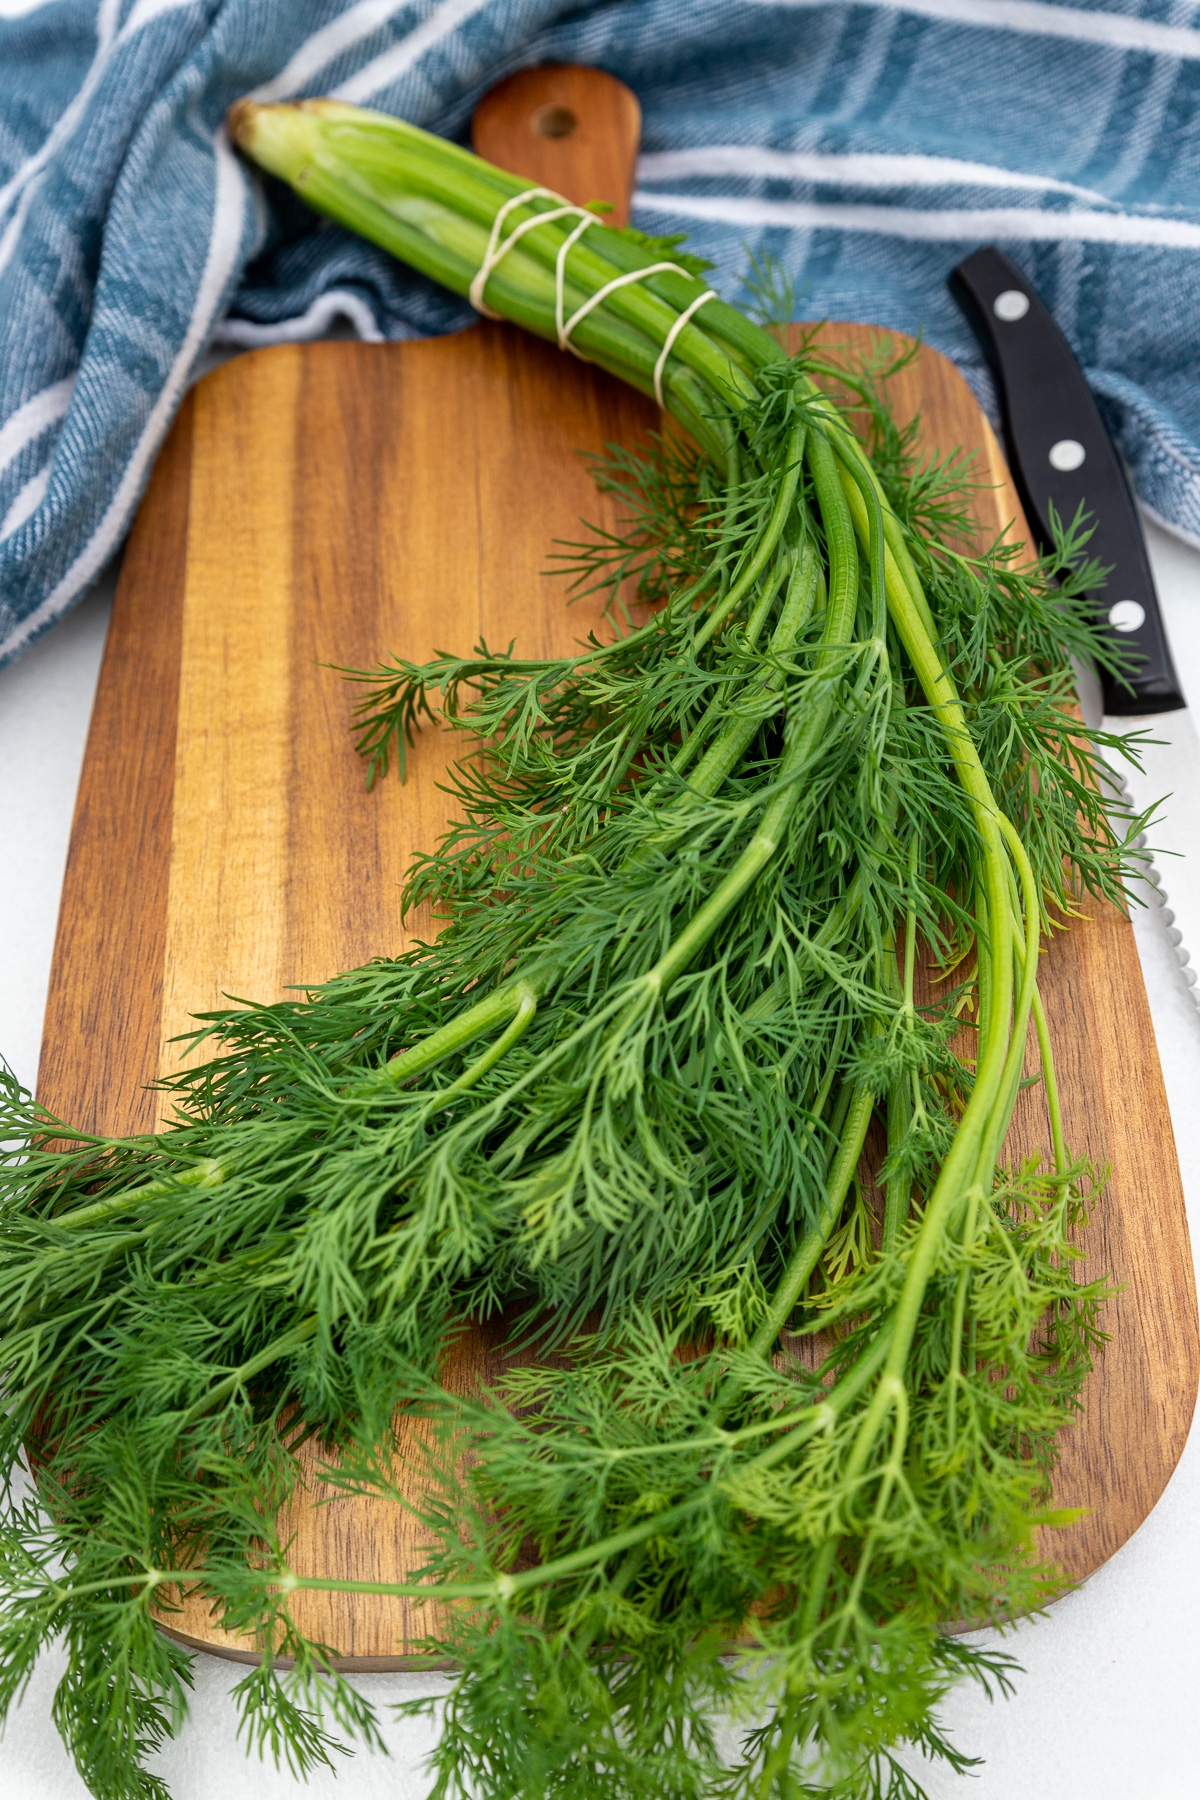 خواص سبزی شوید خشک در طب سنتی (2 خاصیت شگفت انگیز)